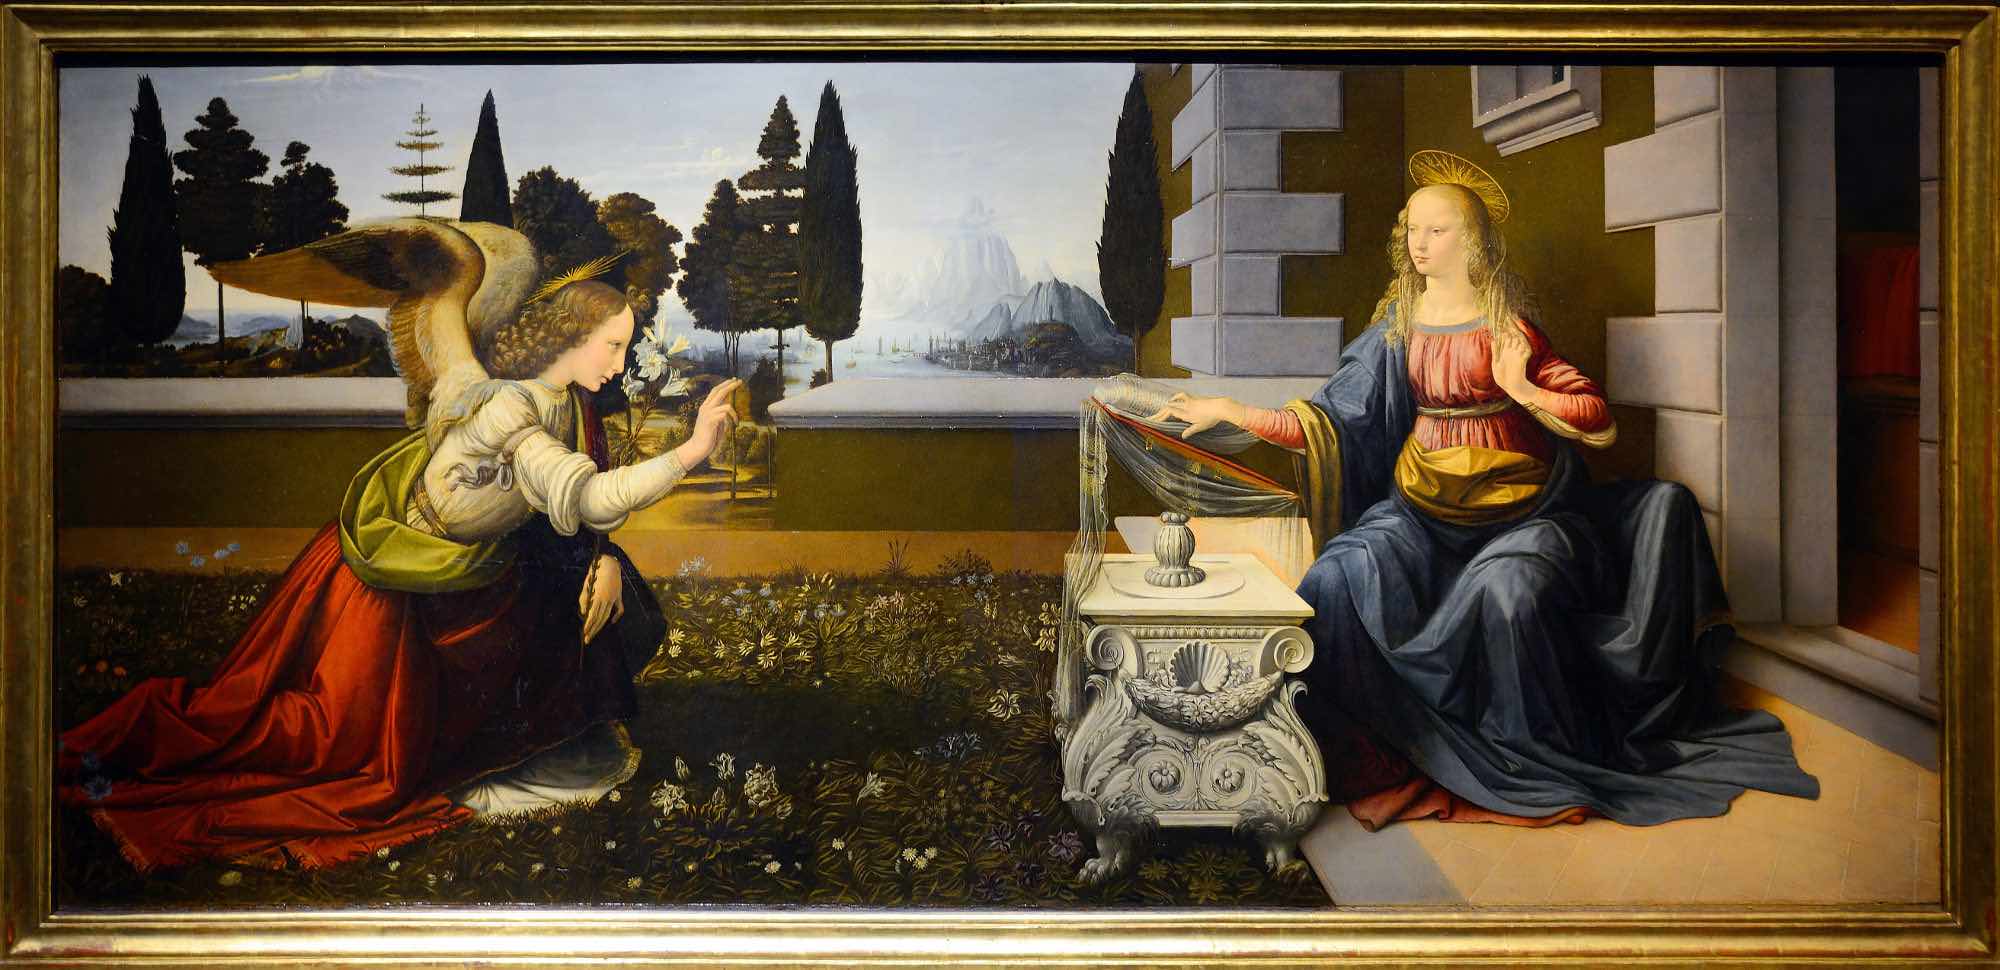 L'Annunciazione di Leonardo da Vinci si trova a Firenze